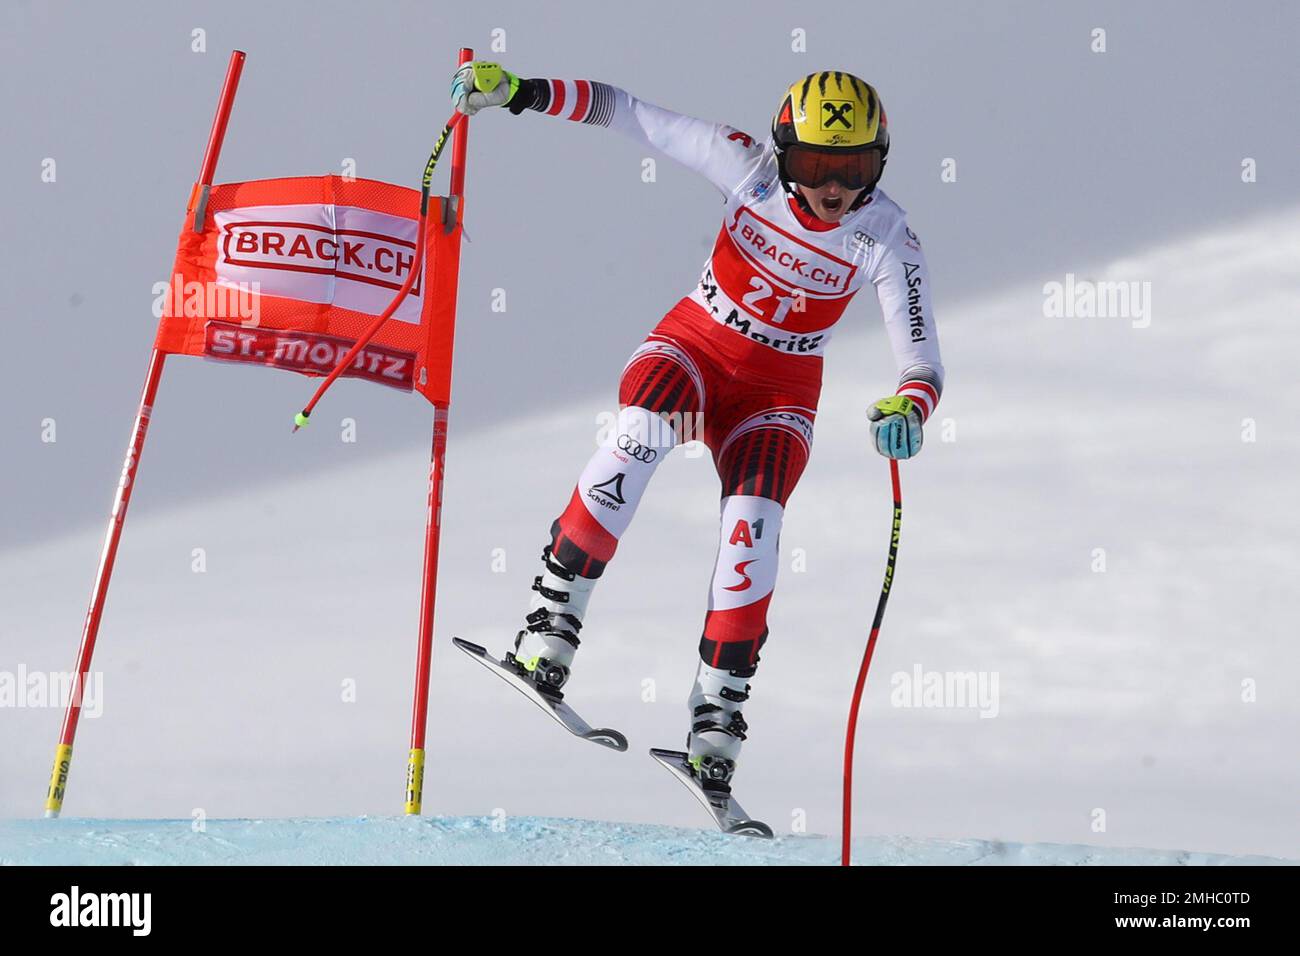 Austrias Nina Ortlieb speeds down the course during an alpine ski, womens World Cup super G in St. Moritz, Switzerland, Saturday, Dec